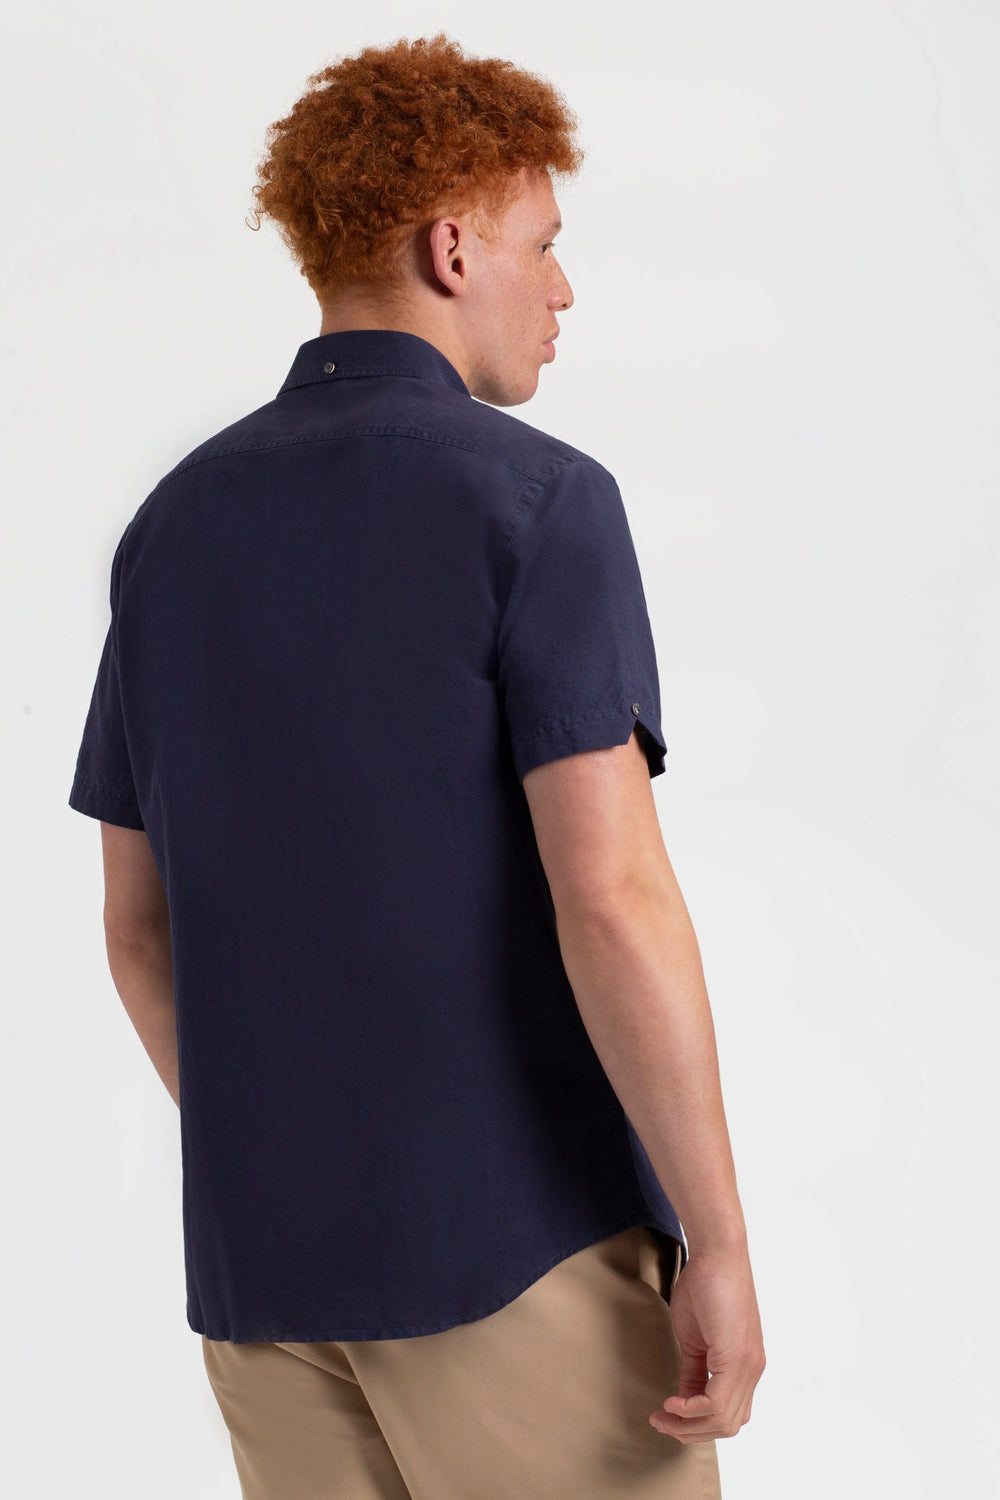 Garment Dye Linen Shirt - Navy